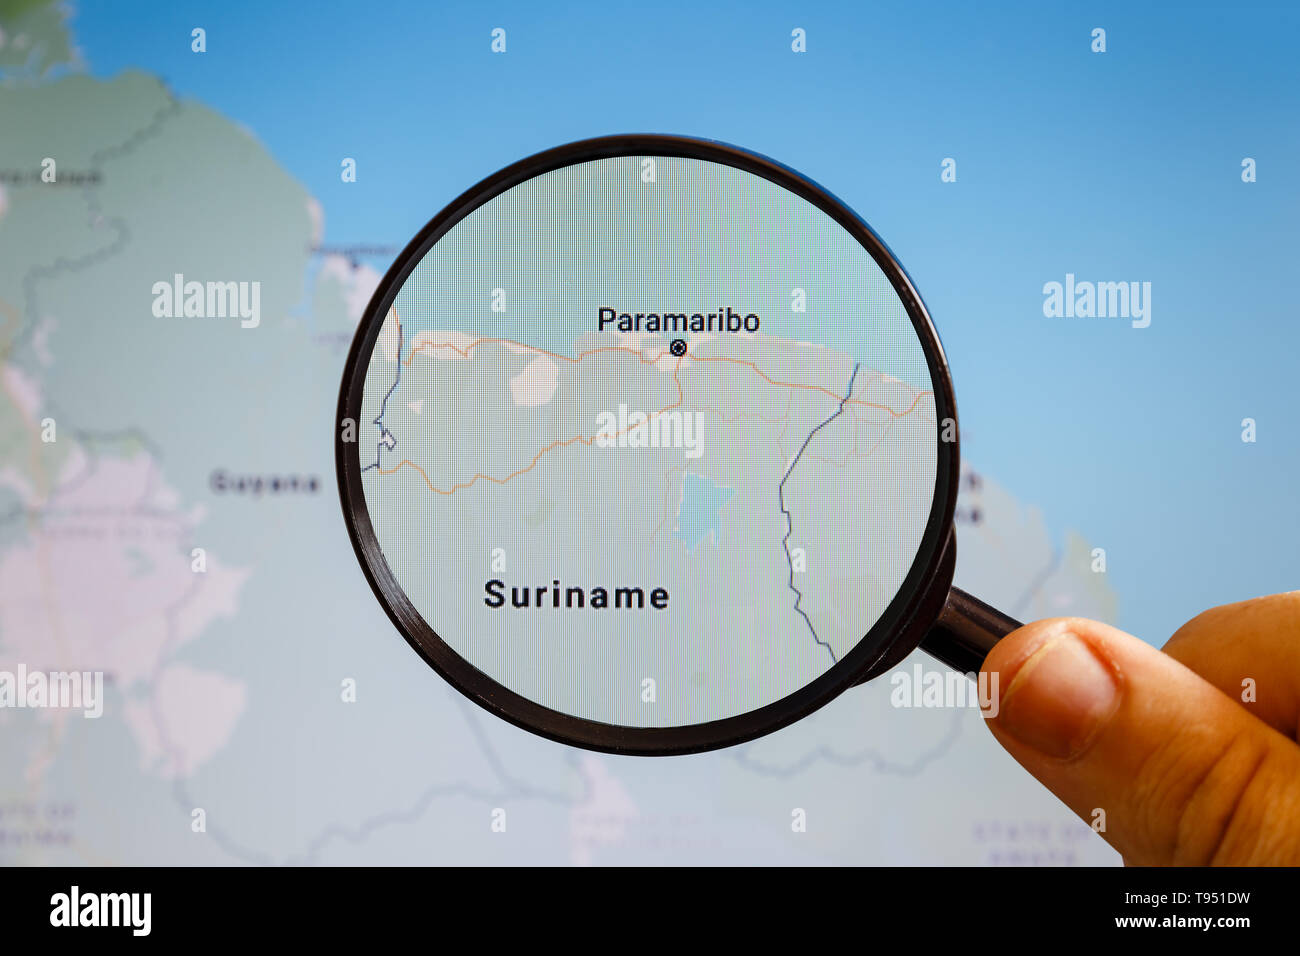 En Paramaribo, Suriname. Mapa político. La ciudad en la pantalla del monitor a través de una lupa en la mano. Foto de stock